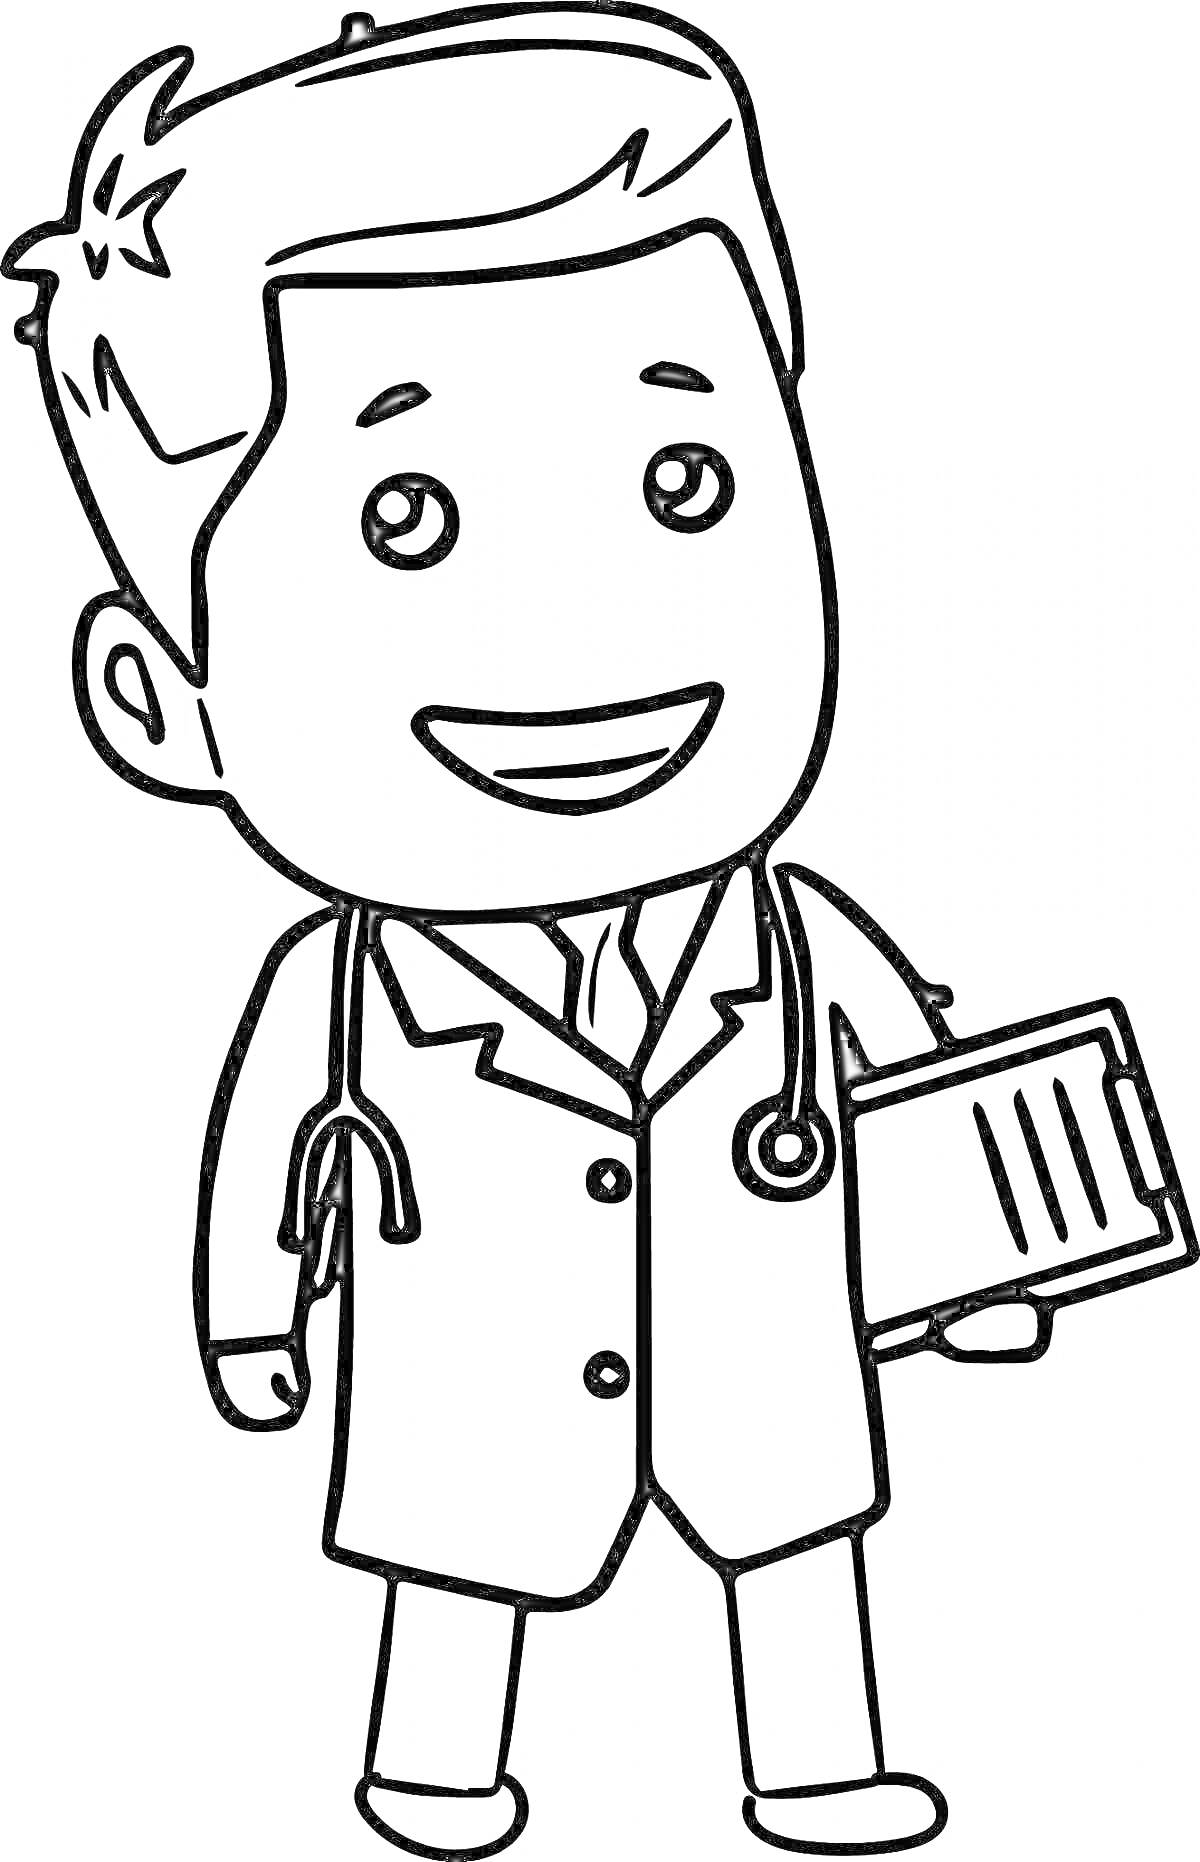 Раскраска Мультяшный врач с блокнотом и стетоскопом